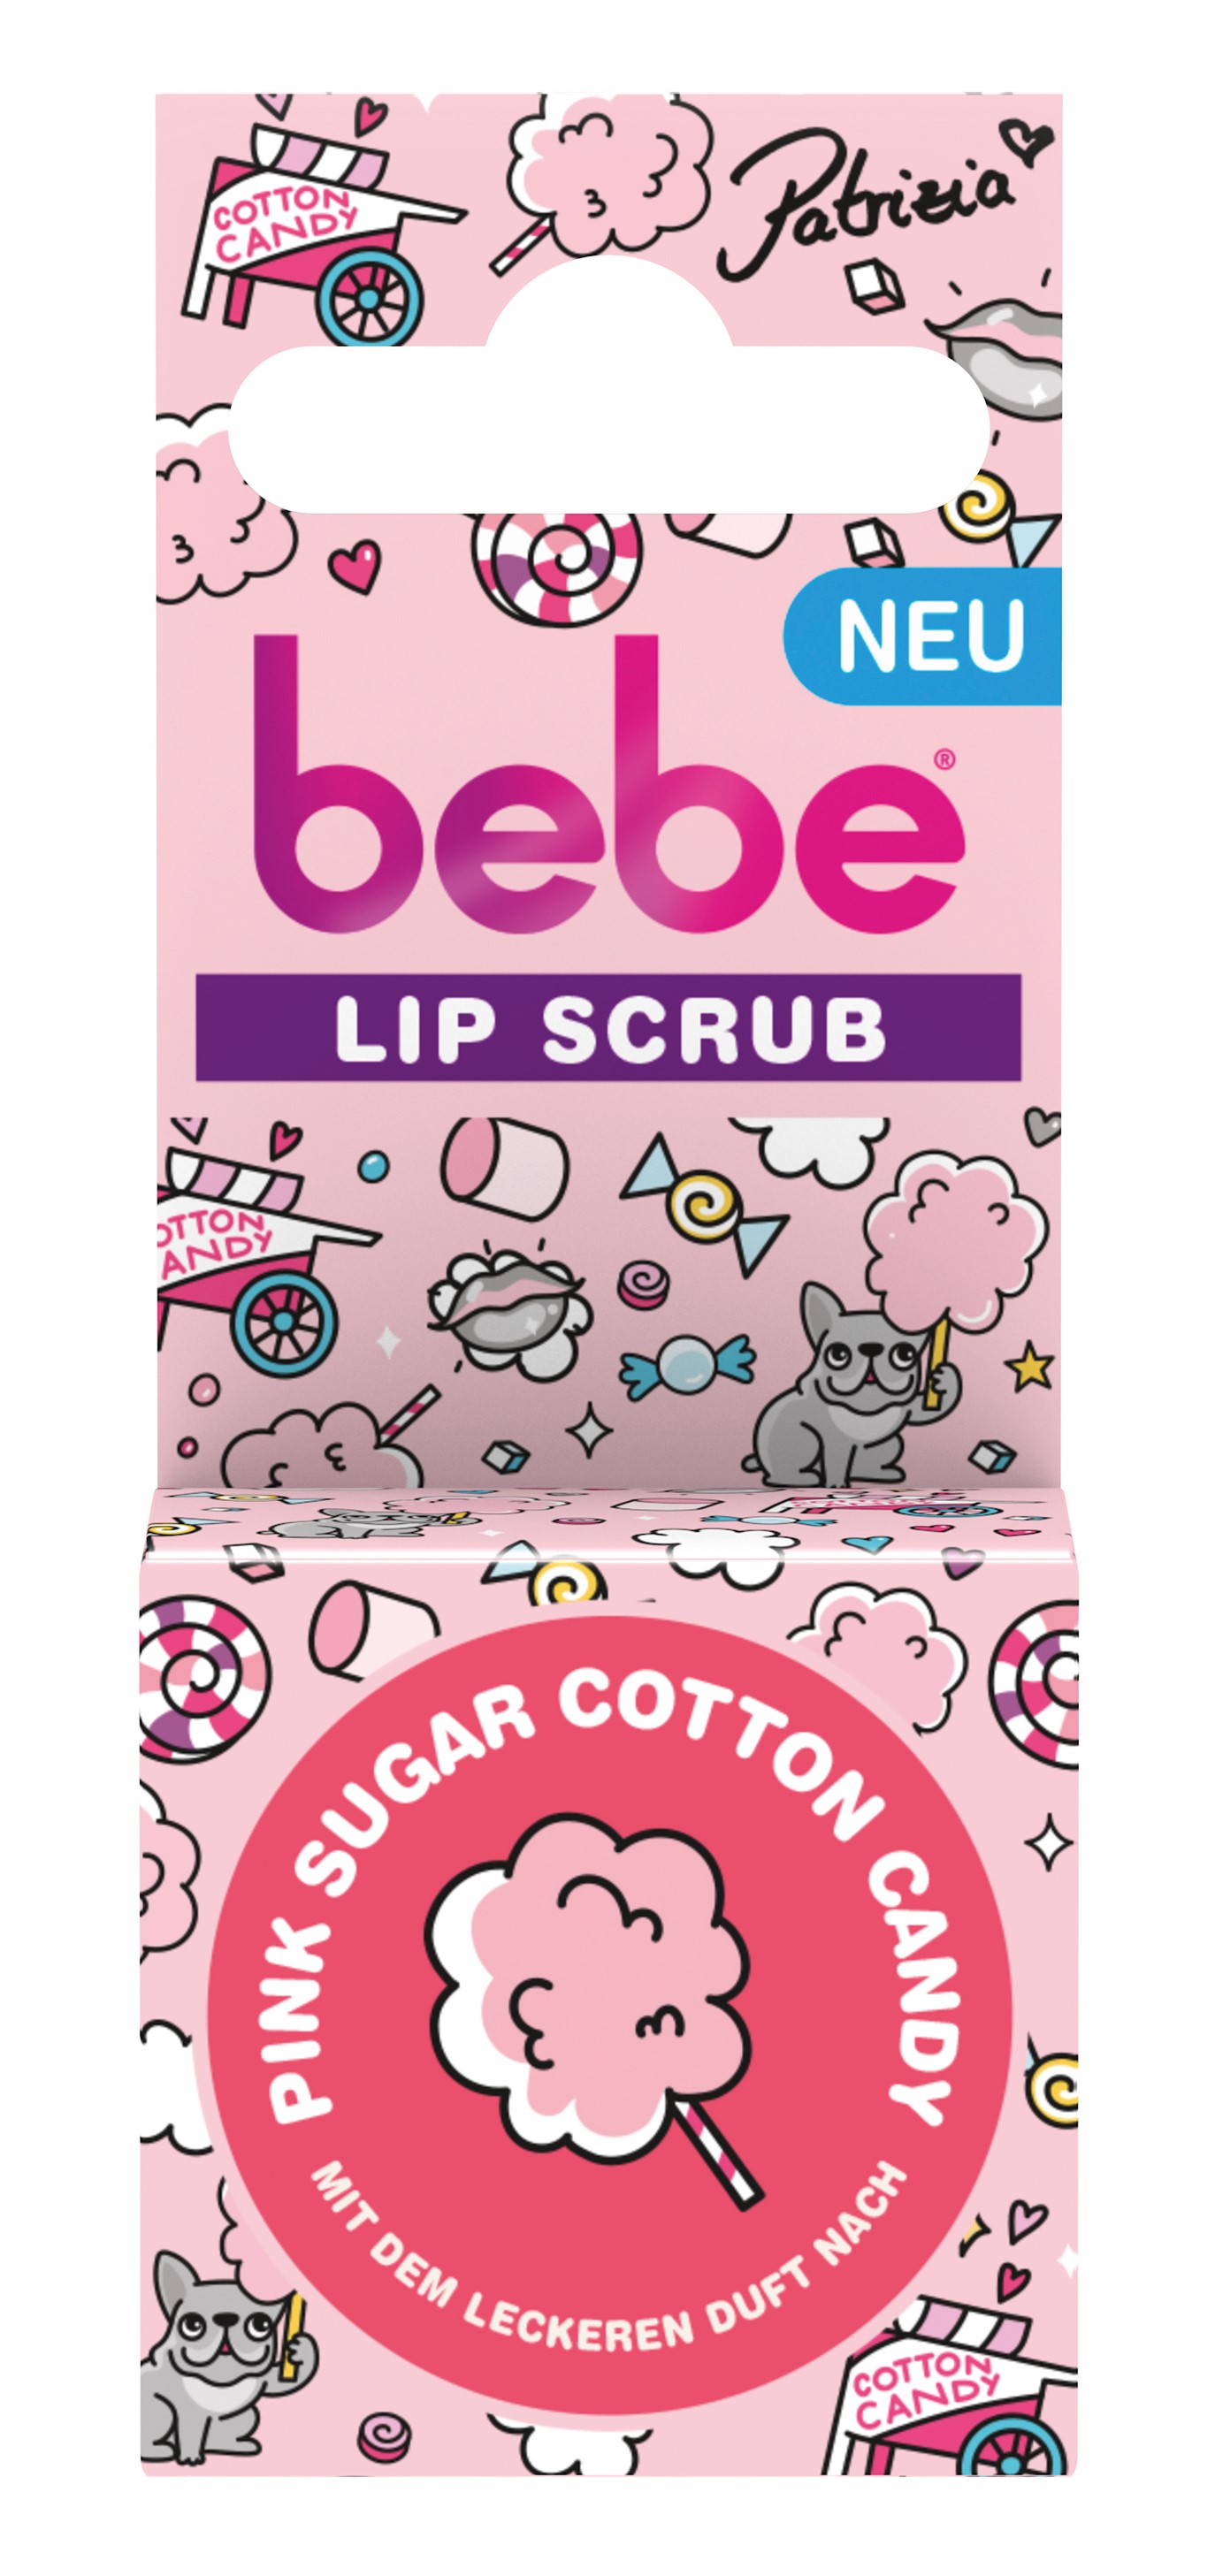 jjbe03.01b bebe lip scrub pink sugar cotton candy co kreiert by patrizia palme 2.99 euro highres